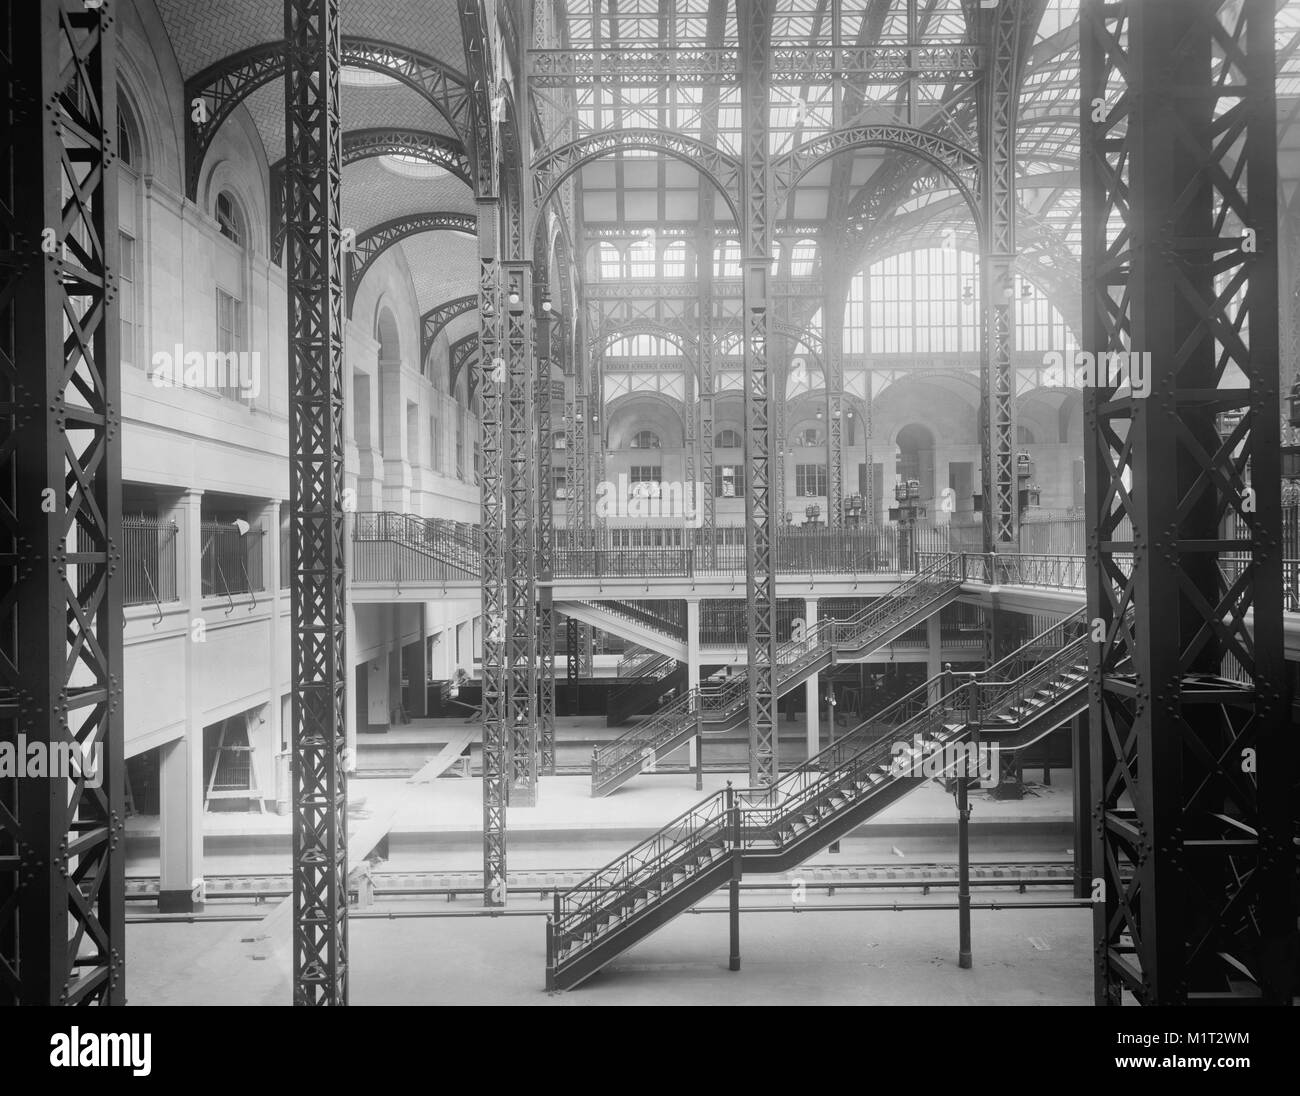 Livello di traccia e concorsi, Pennsylvania Station, New York New York, Stati Uniti d'America, Detroit Publishing Company, 1910 Foto Stock